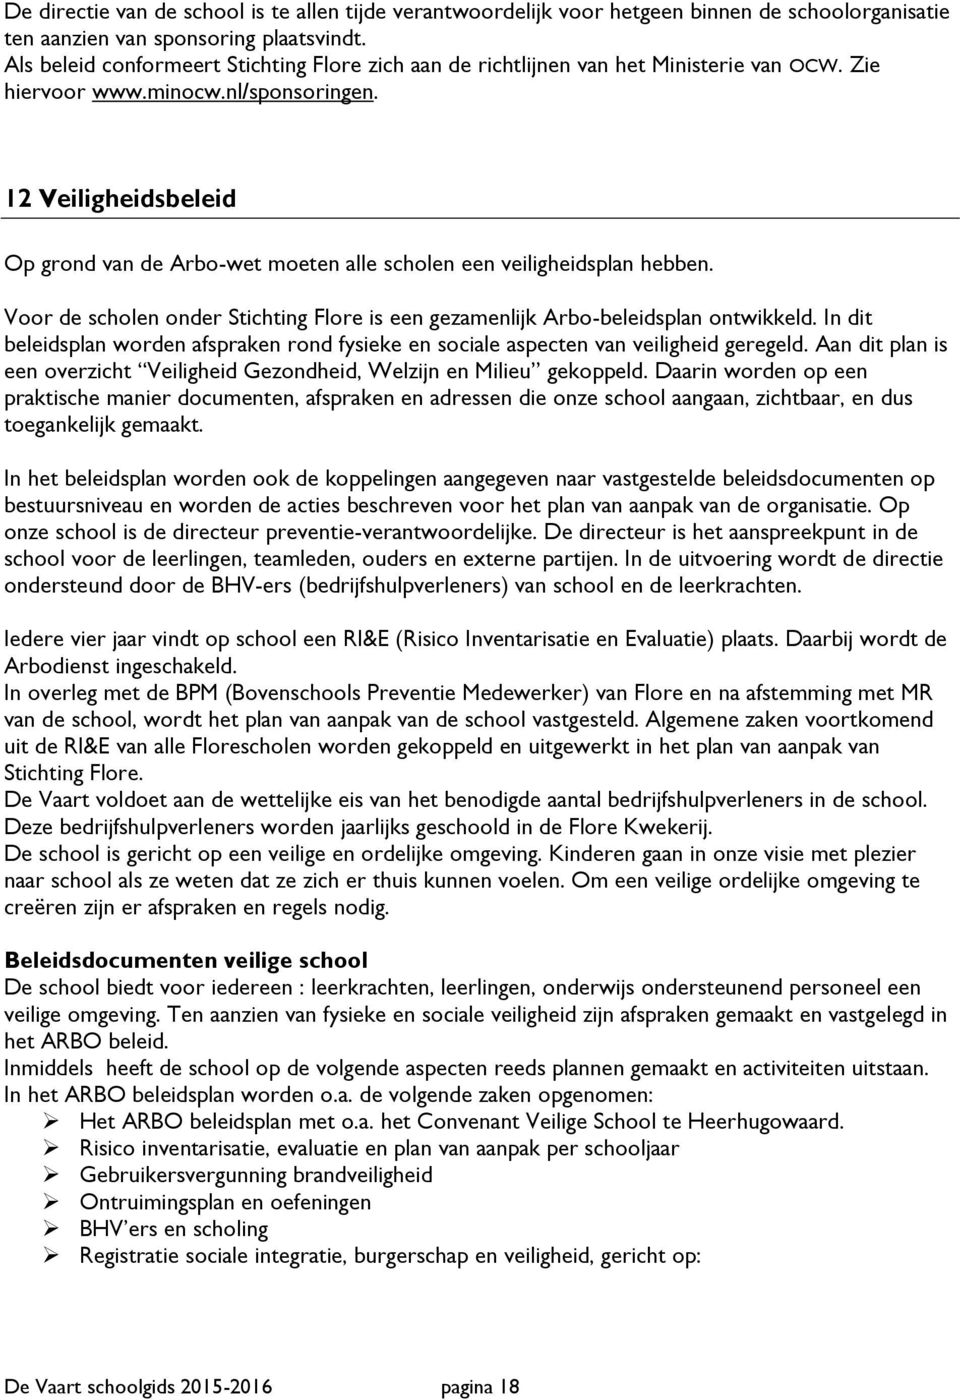 12 Veiligheidsbeleid Op grond van de Arbo-wet moeten alle scholen een veiligheidsplan hebben. Voor de scholen onder Stichting Flore is een gezamenlijk Arbo-beleidsplan ontwikkeld.